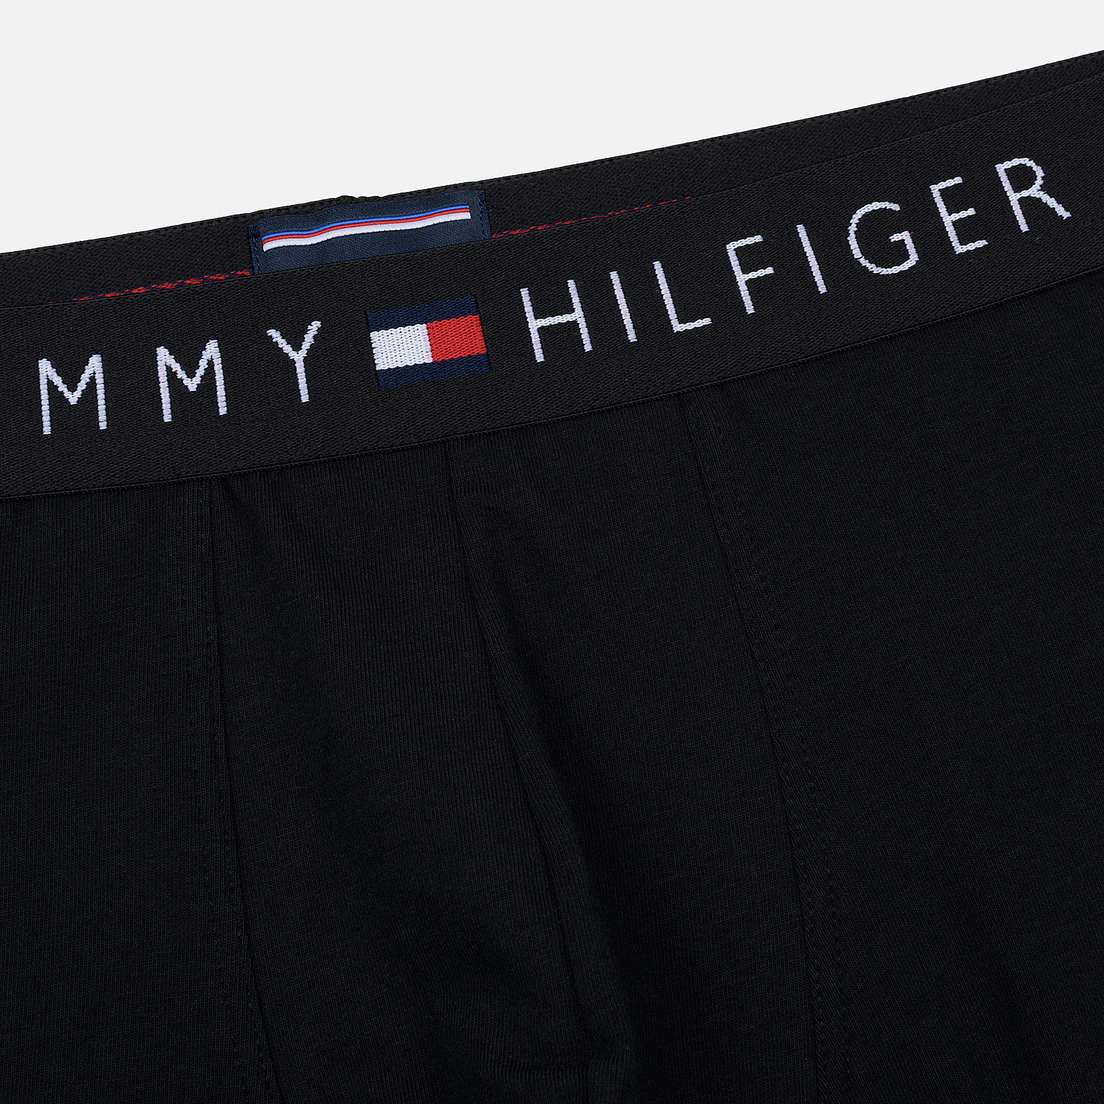 Tommy Hilfiger Underwear Мужские трусы Branded Cotton Boxer